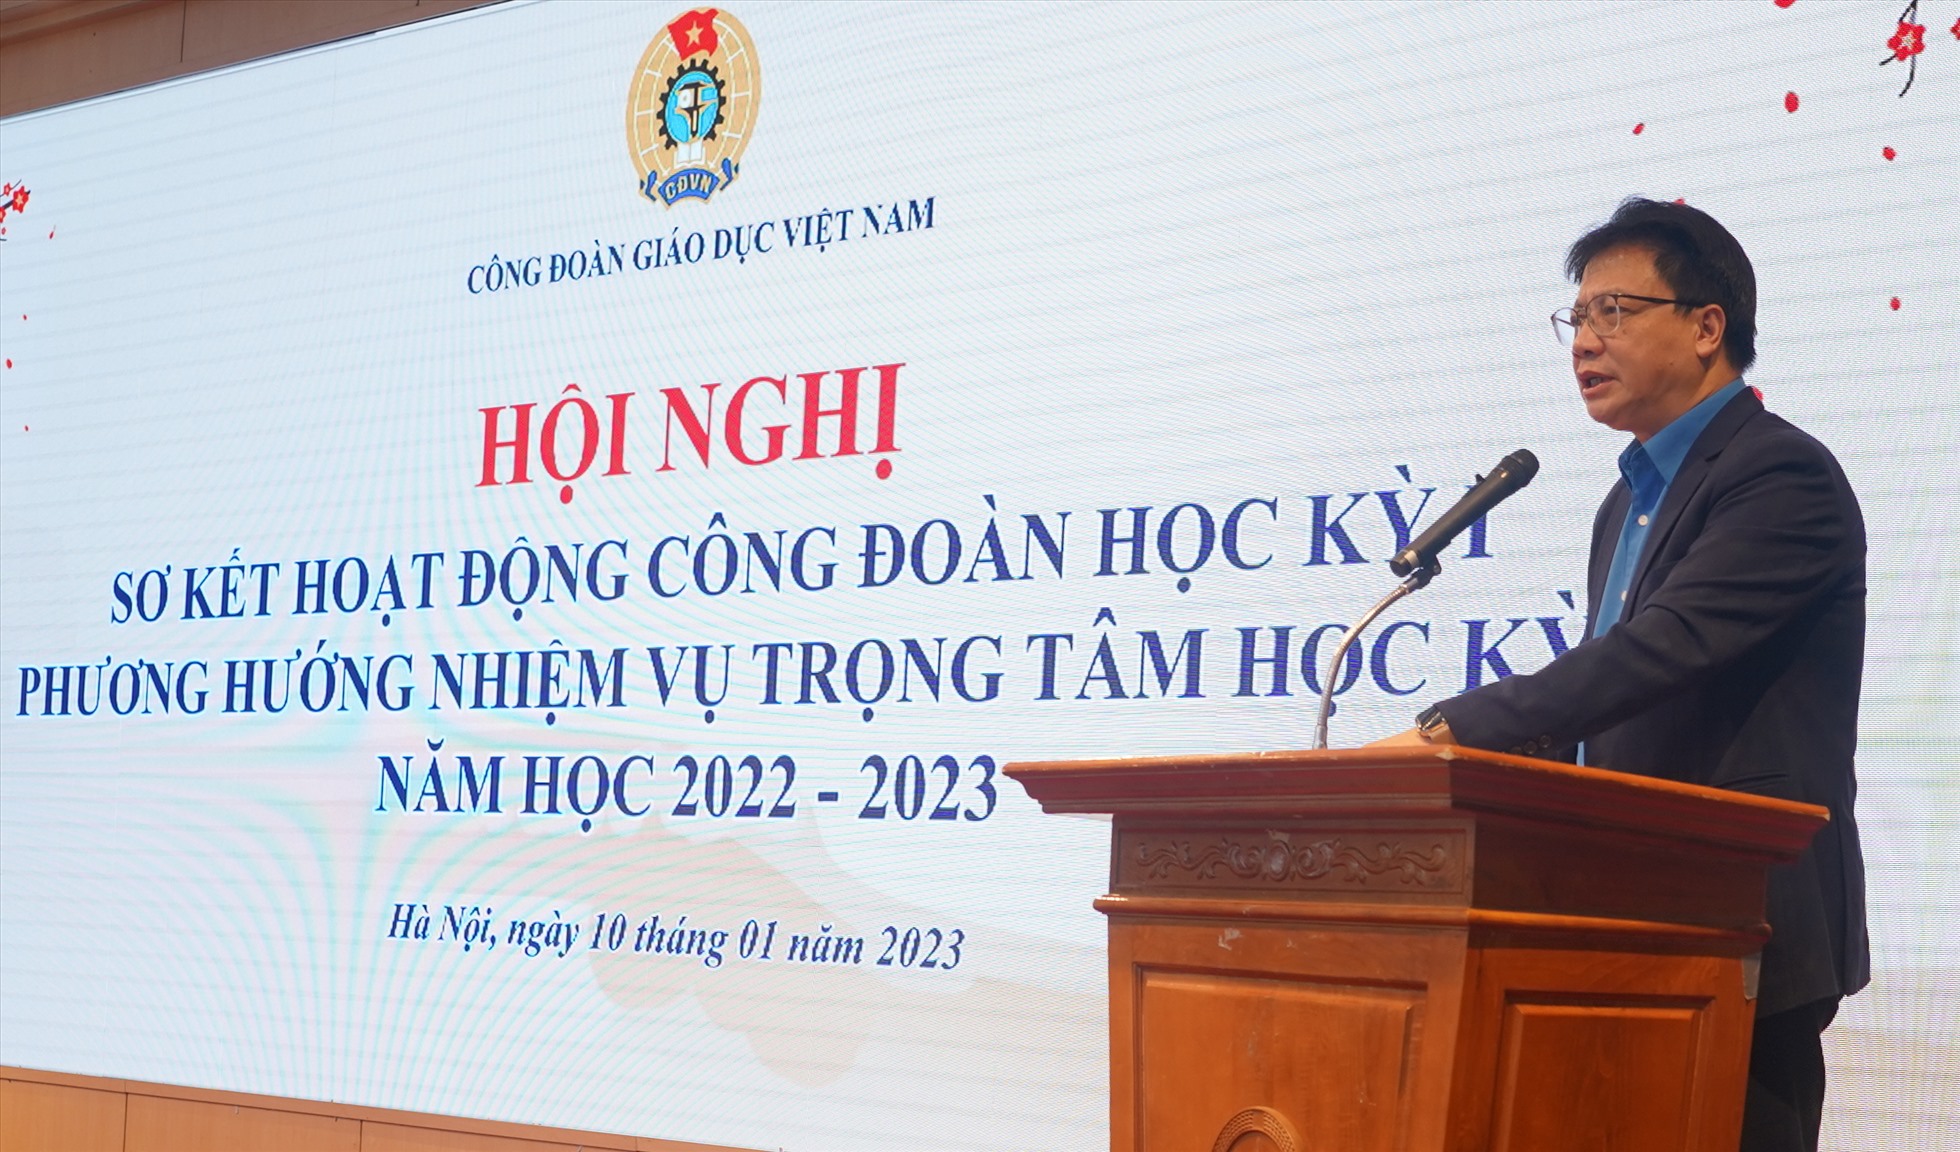 Ông Nguyễn Ngọc Ân - Chủ tịch Công đoàn Giáo dục Việt Nam phát biểu. Ảnh: Anh Thư.